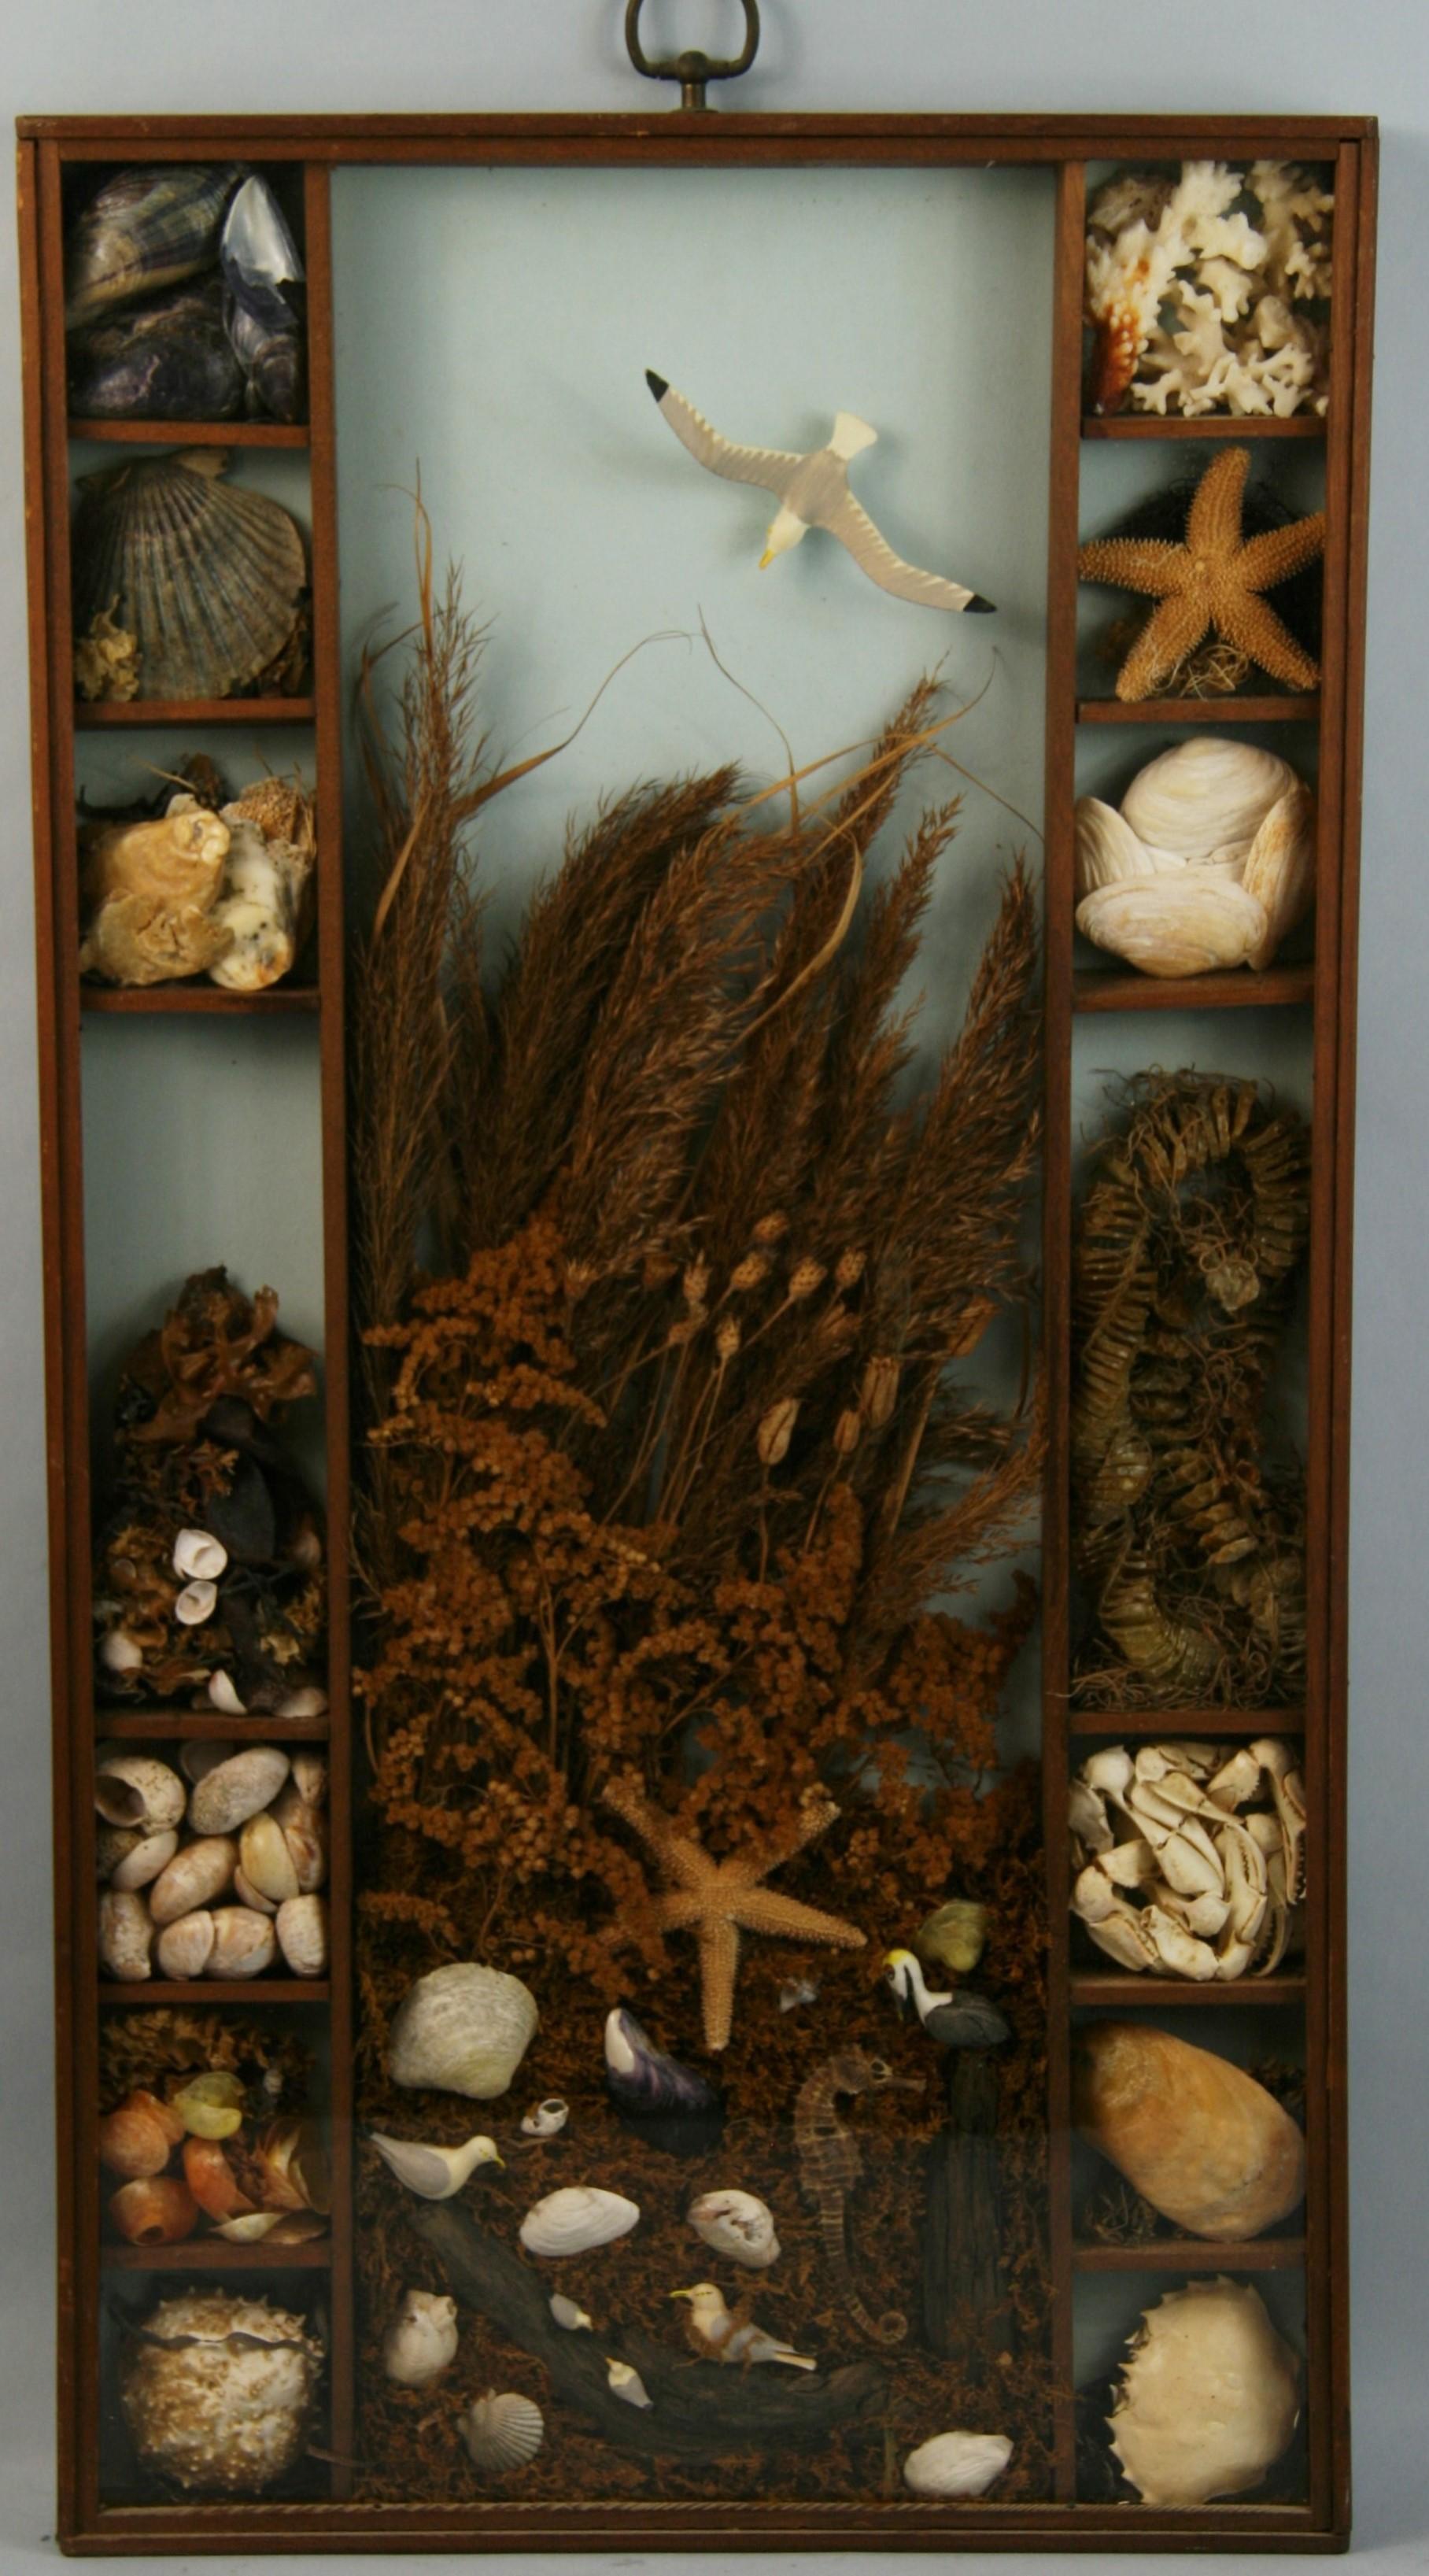 3-715 Magnifique diorama de vie marine comprenant des coquillages, des crustacés, des hippocampes, des étoiles de mer, le tout dans un cadre en noyer sous verre.
Anneau de suspension en laiton